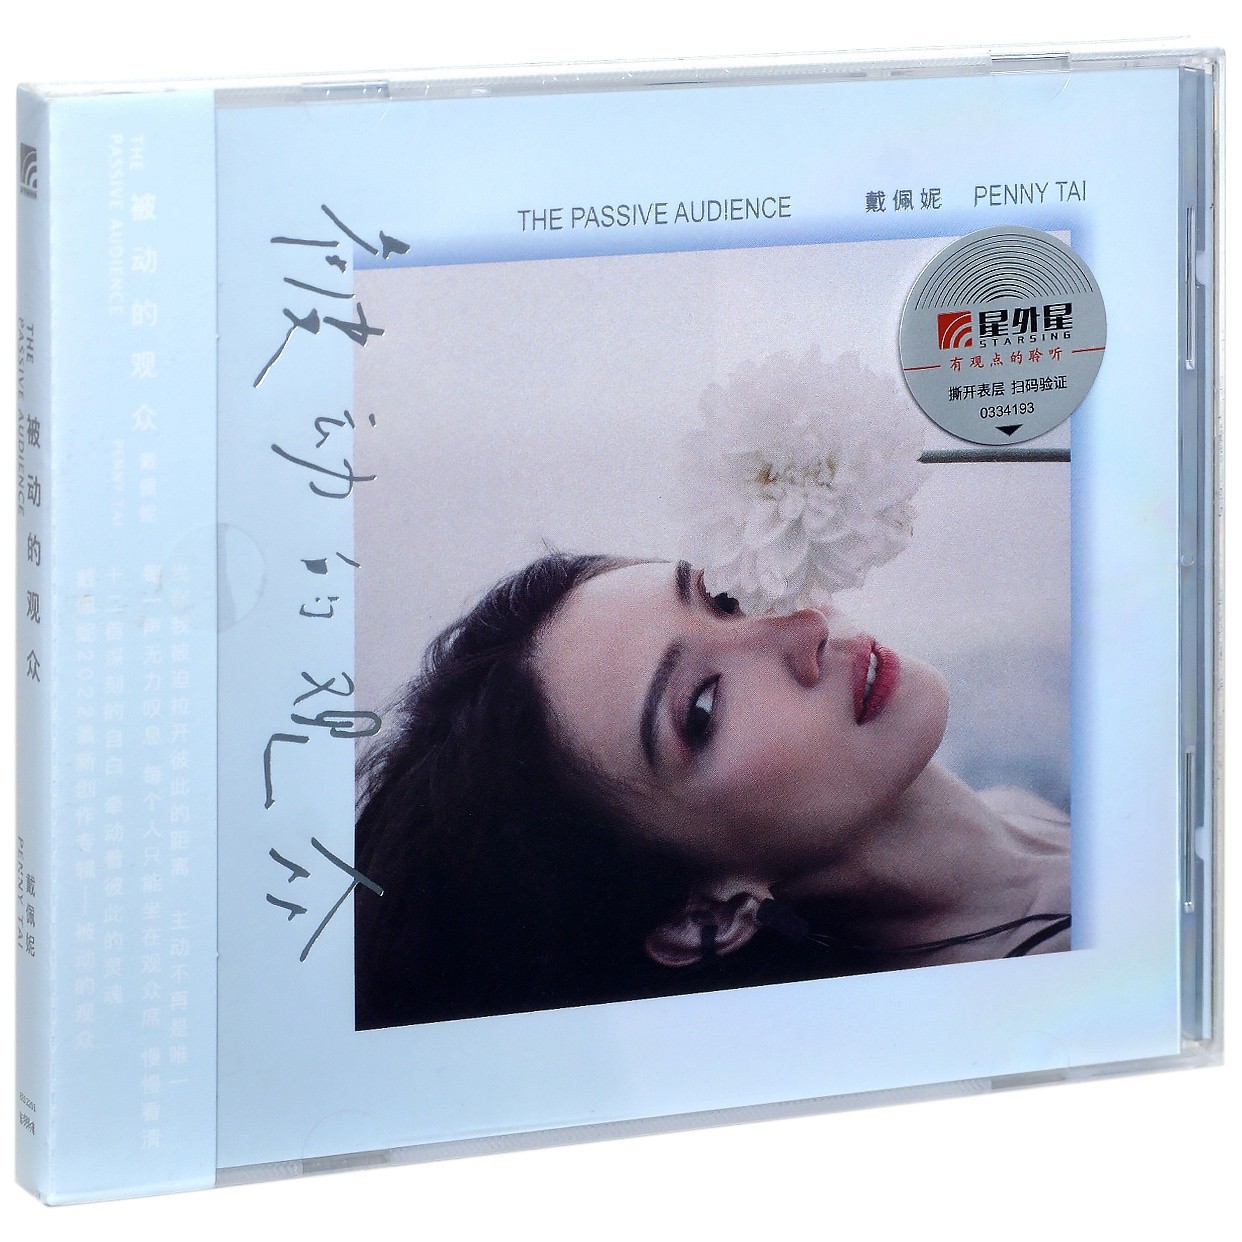 正版专辑 戴佩妮 被动的观众 唱片CD+歌词册 平装版 星外星发行